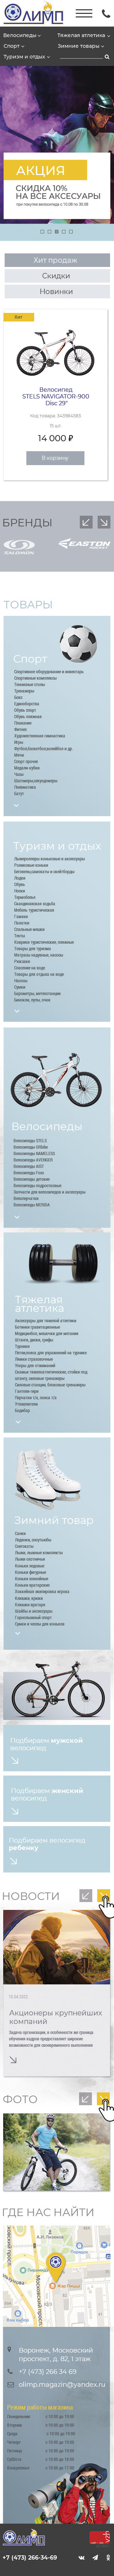 сайт фитнес пример Олимп 320 px